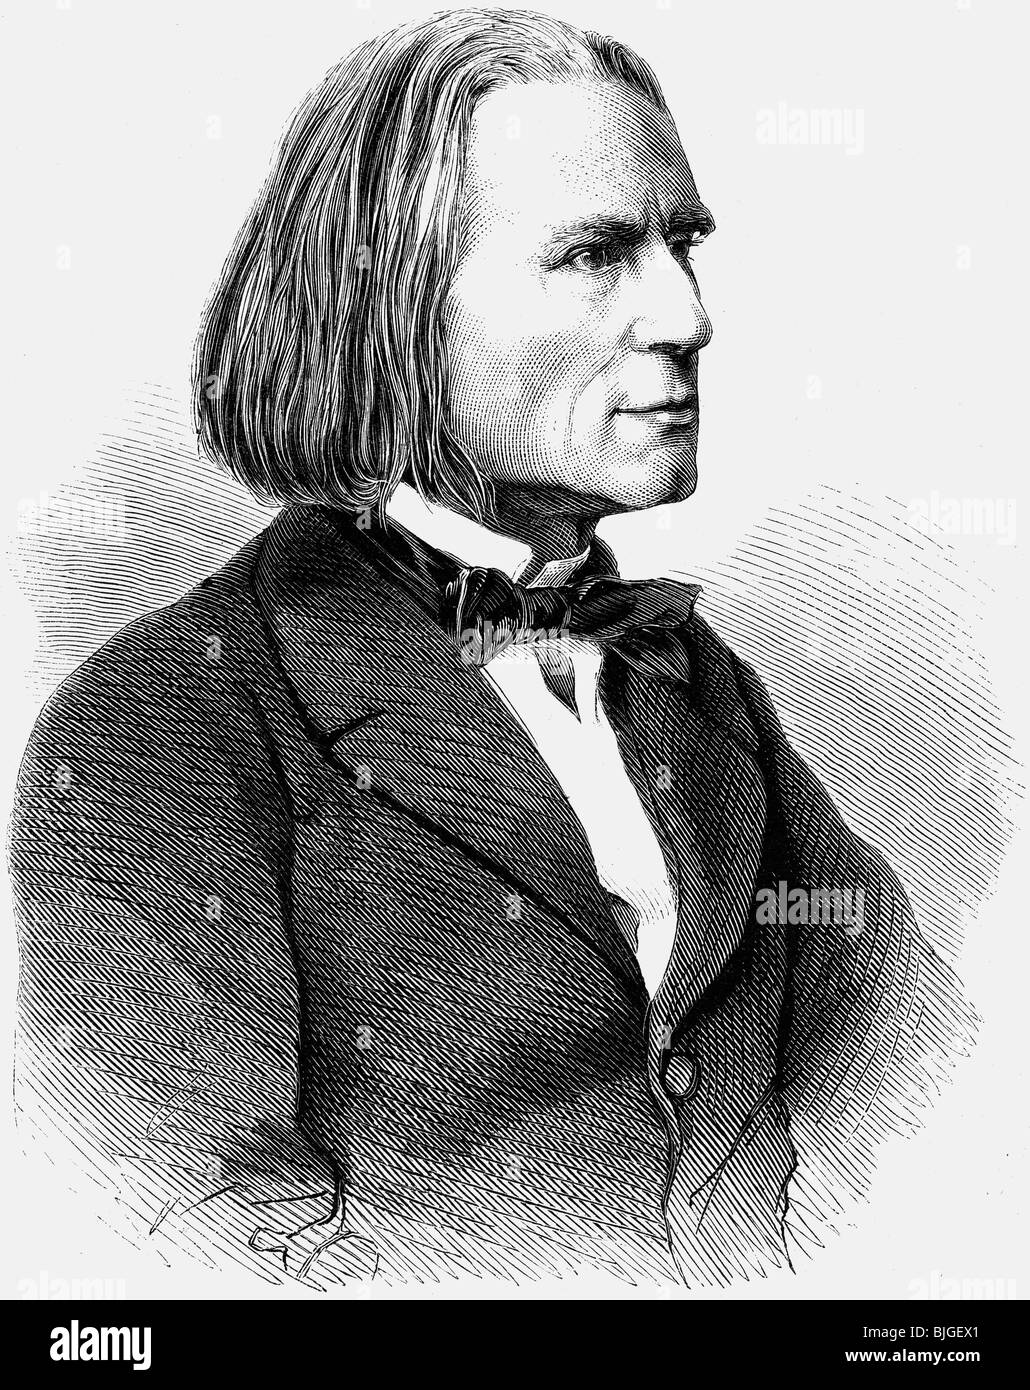 Liszt, Franz, 22.10.1811 - 31.7.1886, compositeur et pianiste hongrois, portrait, gravure en bois, XIXe siècle, Banque D'Images